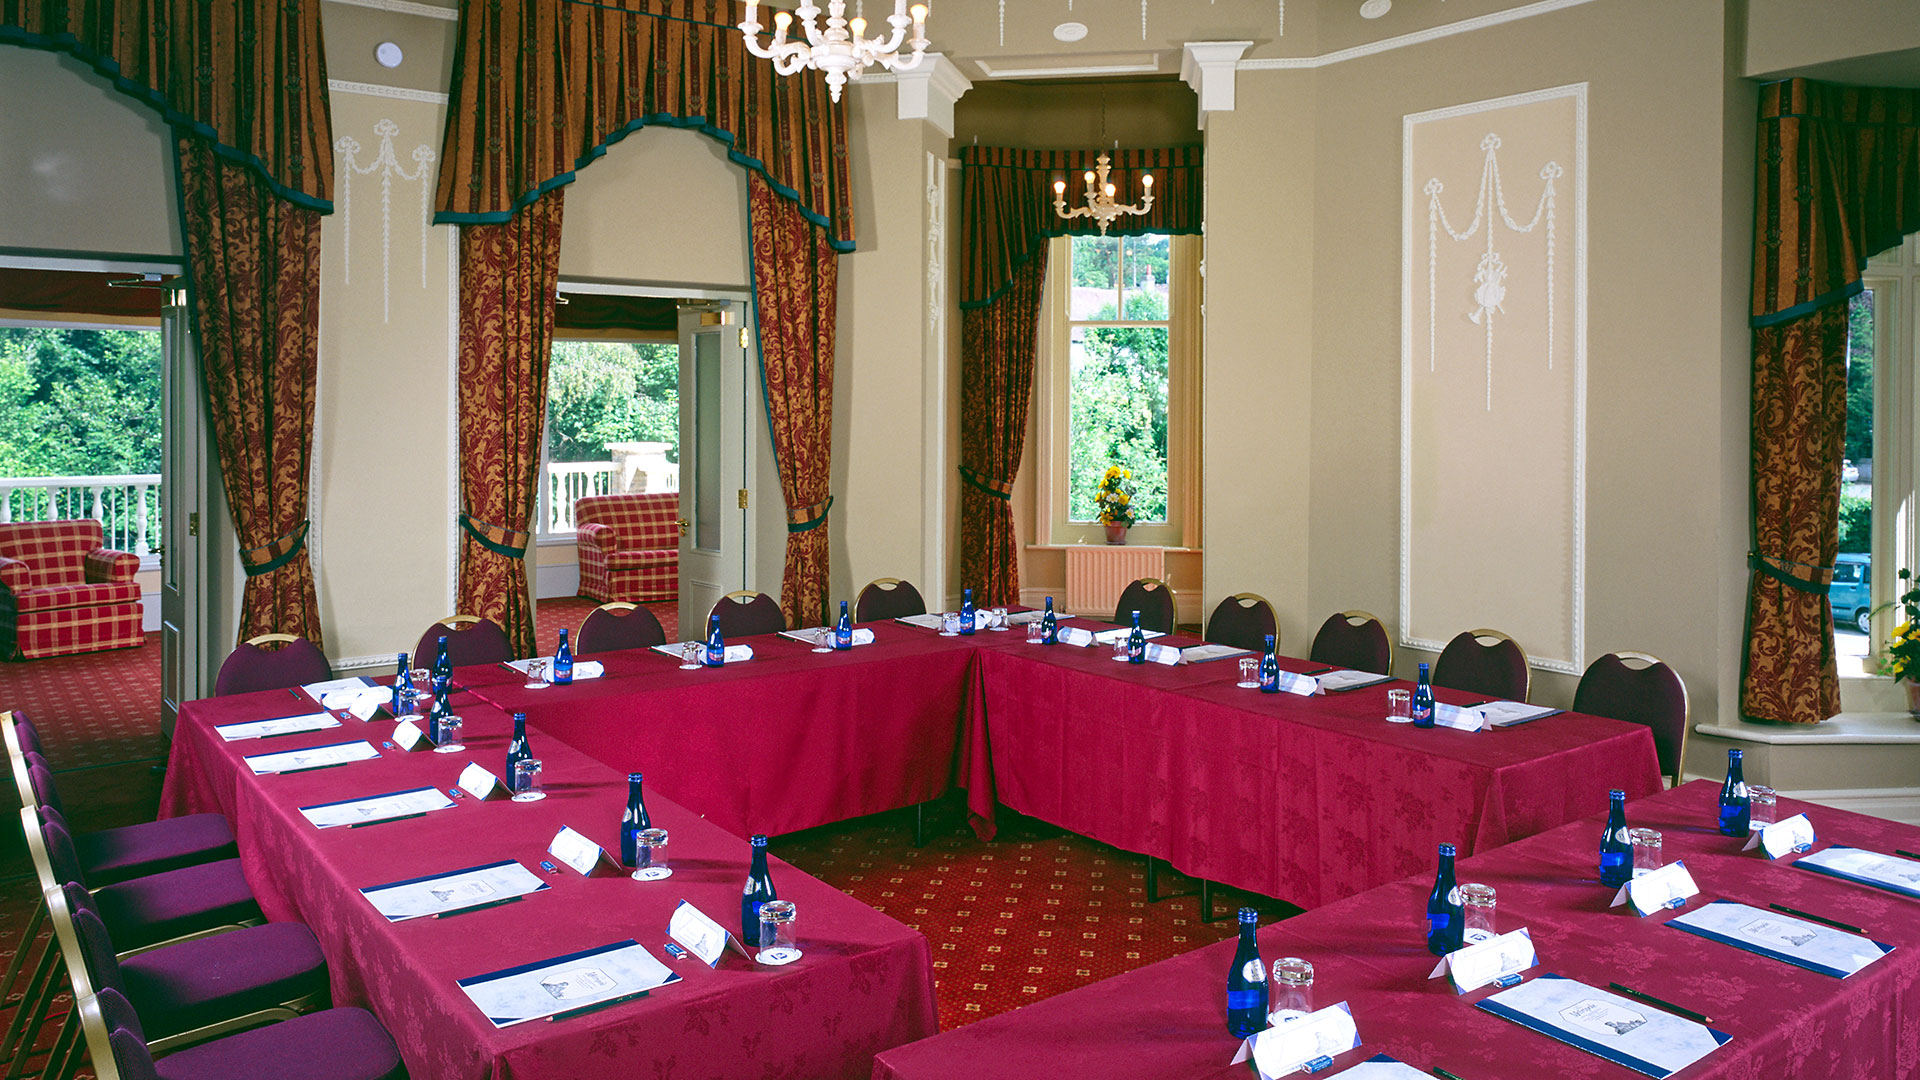 Wedgewood meeting room at Metropole Hotel